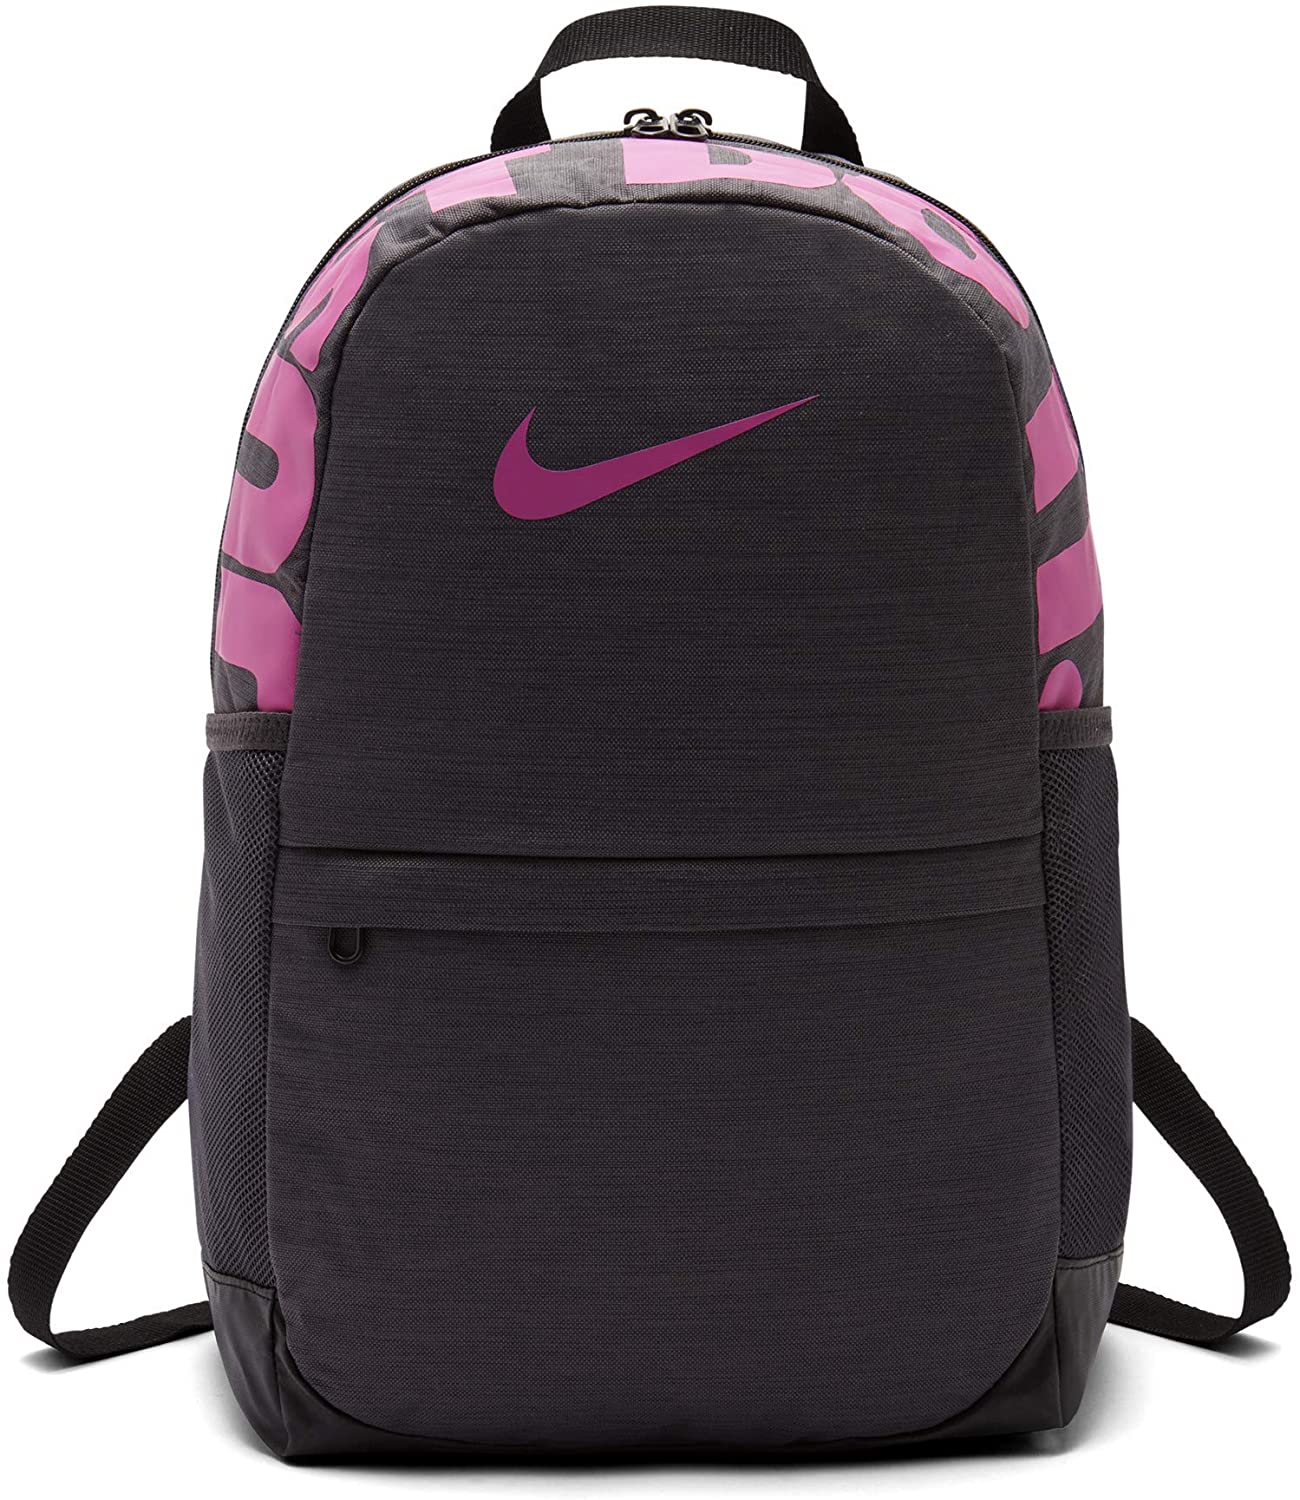 6 Best Nike Backpack For Toddlers In 2021 - Backpacks Geeks